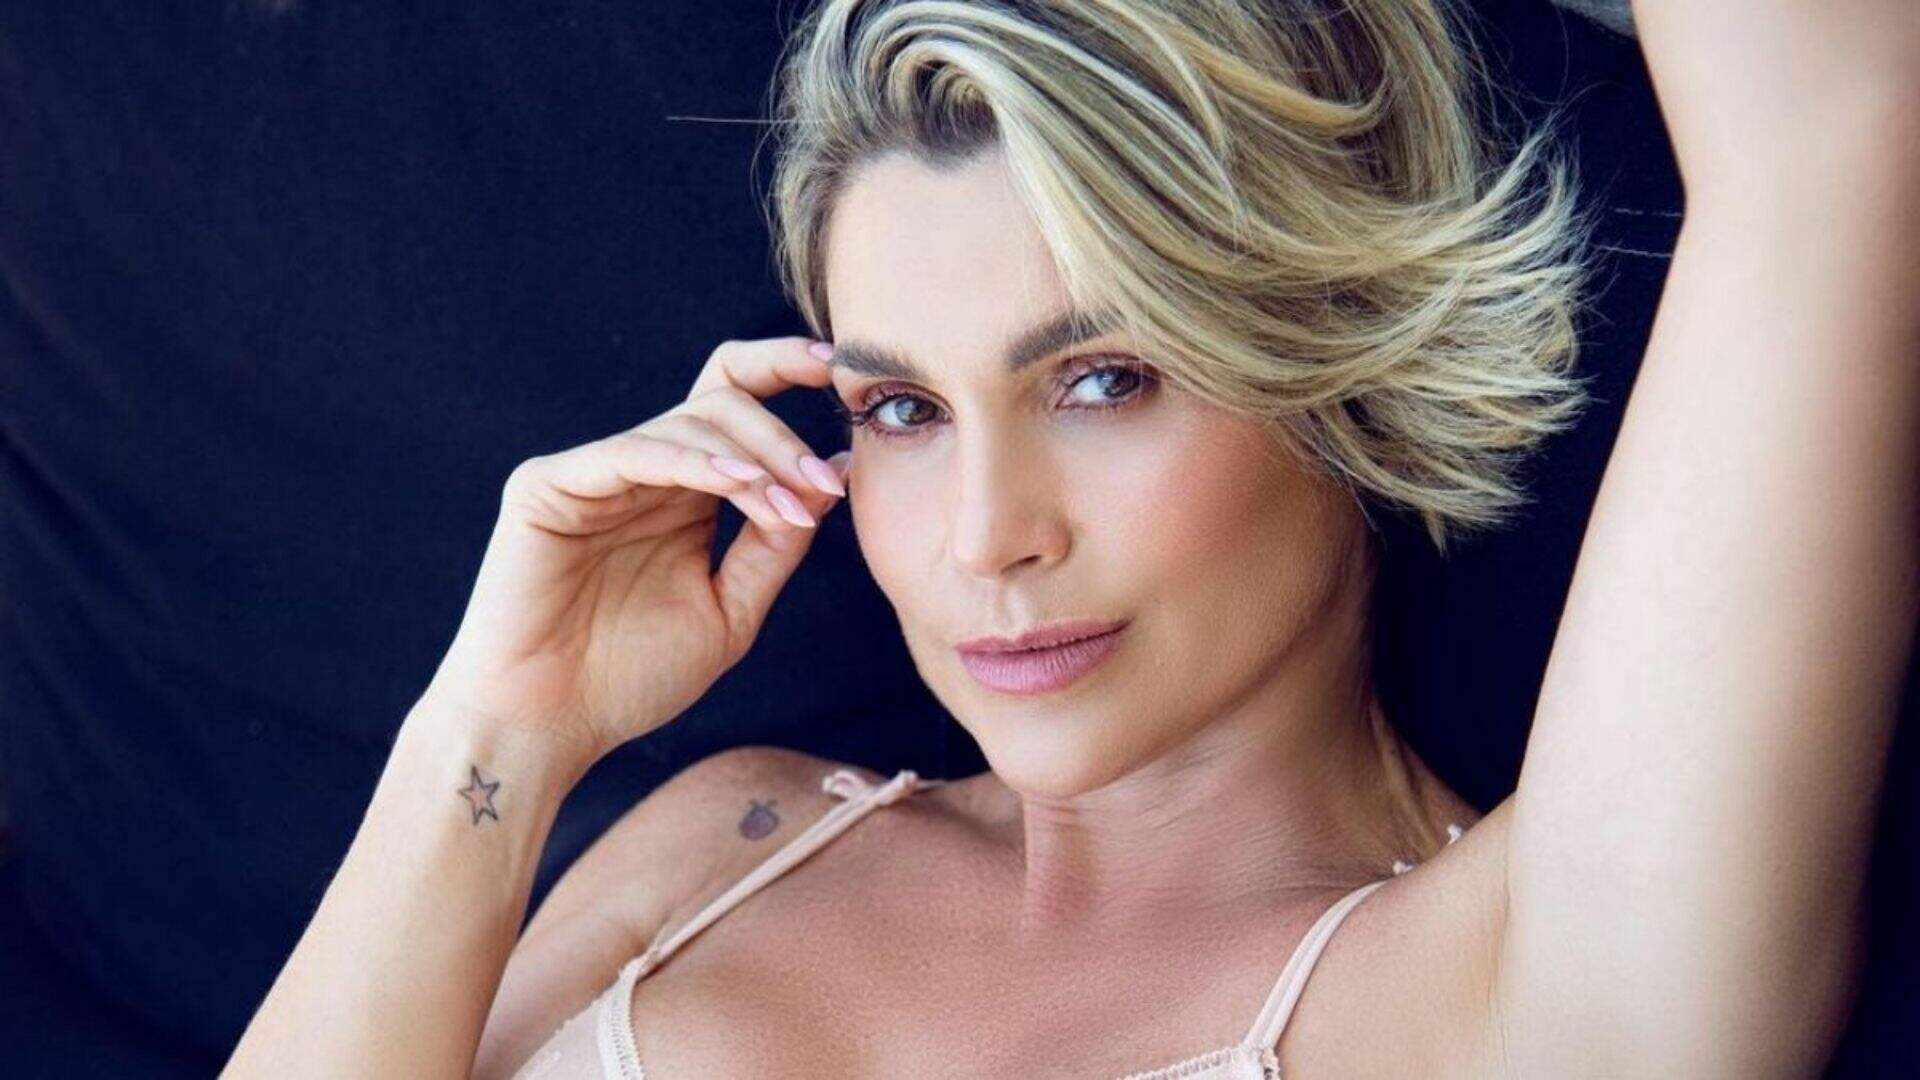 Flávia Alessandra é uma atriz brasileira, ela começou sua carreira artística na novela Top Model em 1989. A atriz está casada com o apresentador Otaviano Costa e tem duas filhas: Giulia e Olívia.